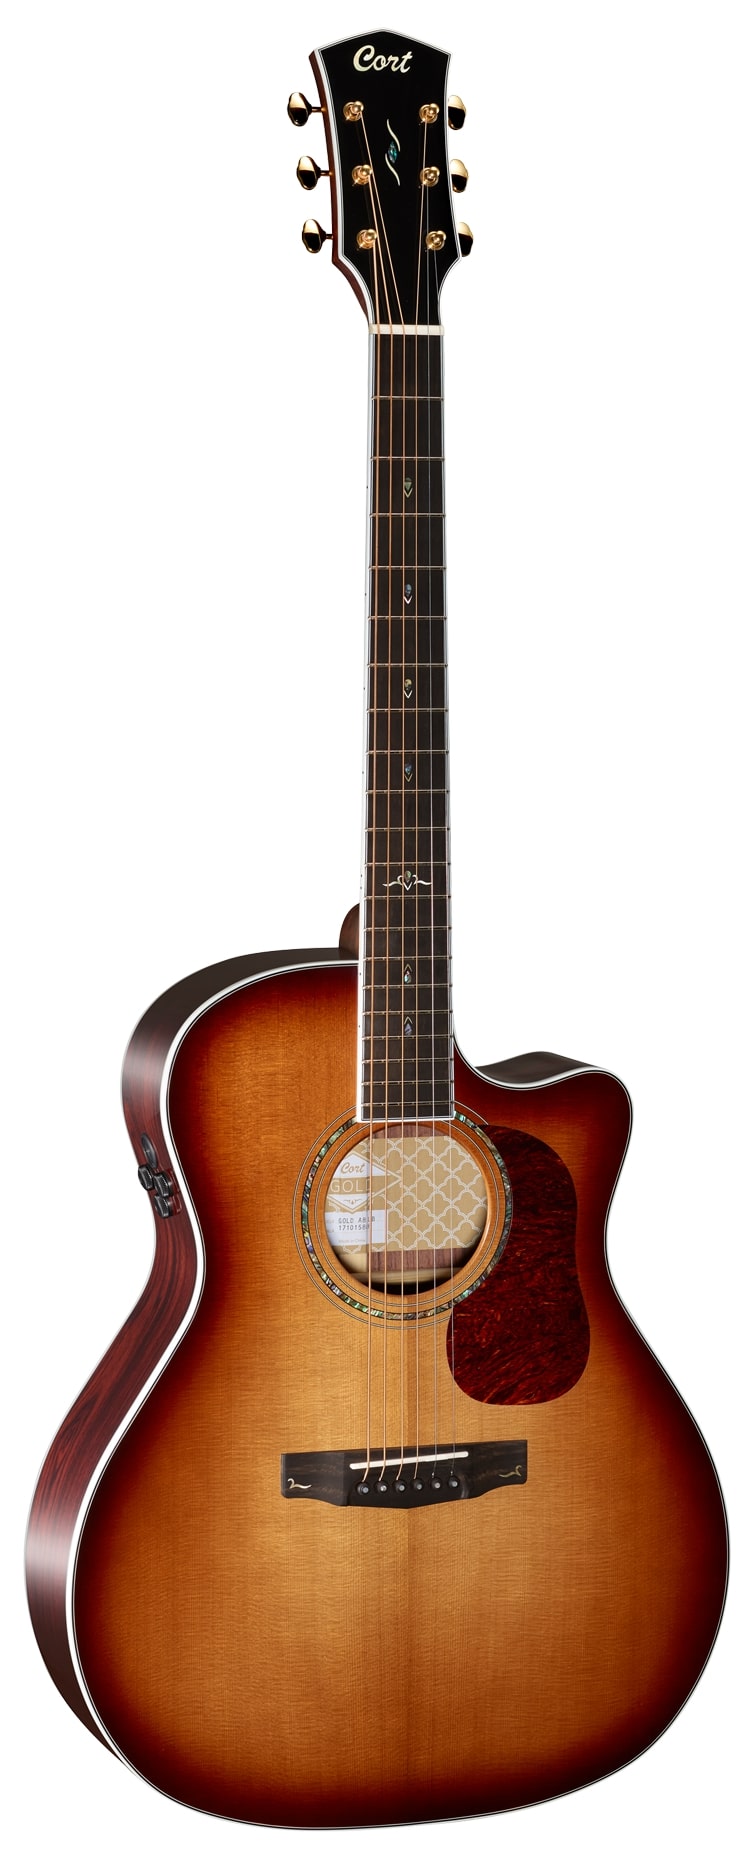 Электроакустические гитары Cort Gold-A8-WCASE-LB (чехол в комплекте) классические гитары cort gold oc8 nylon wcase nat